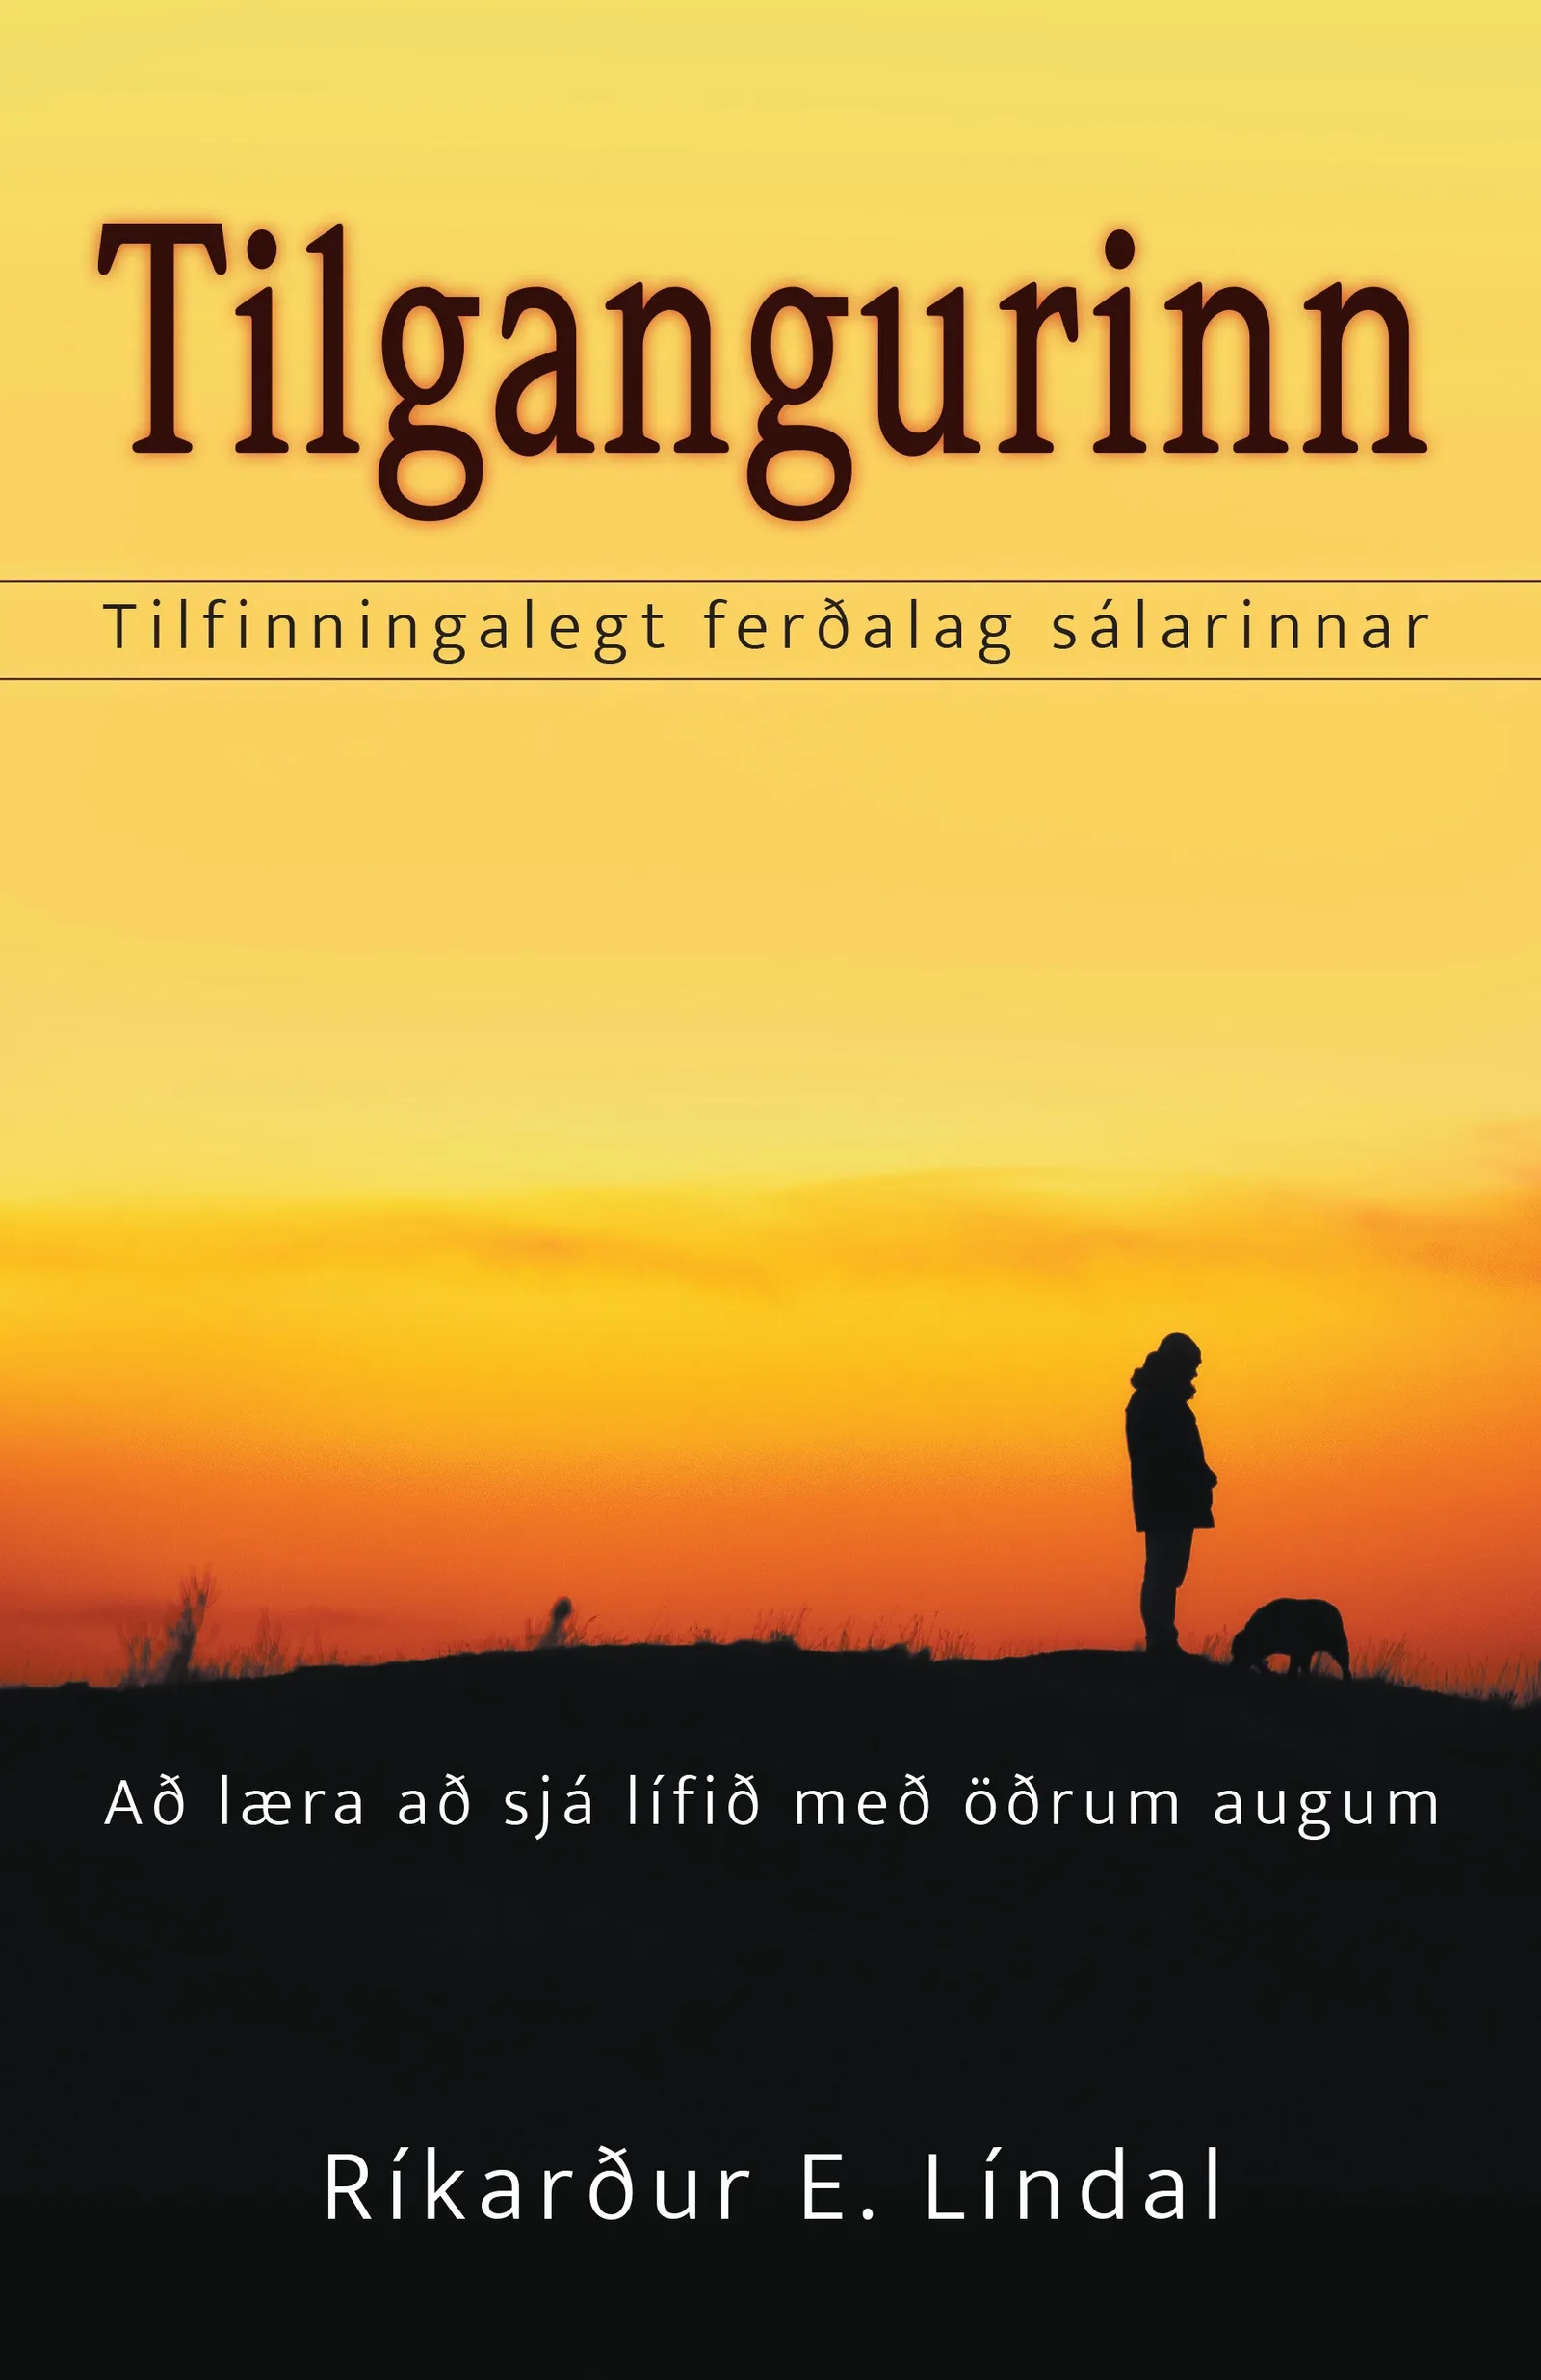 Bókakápa: Tilgangurinn Tilfinningalegt ferðalag sálarinnar. Að læra að sjá lífið með öðrum augum.